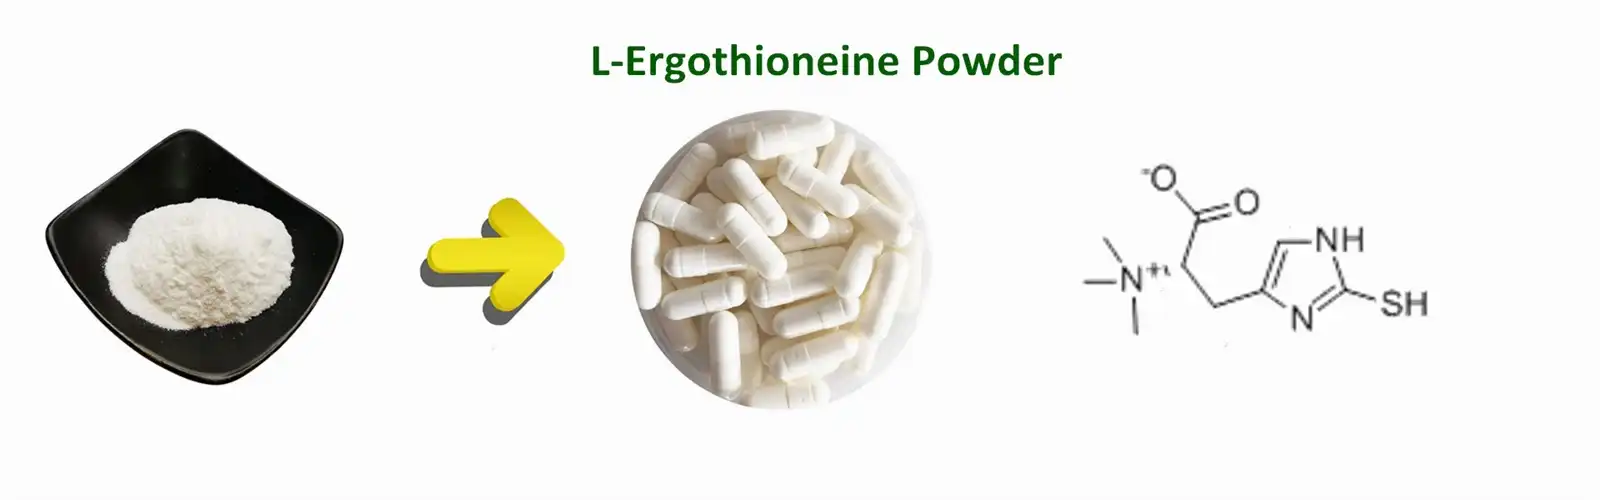 L-Ergothioneine powder